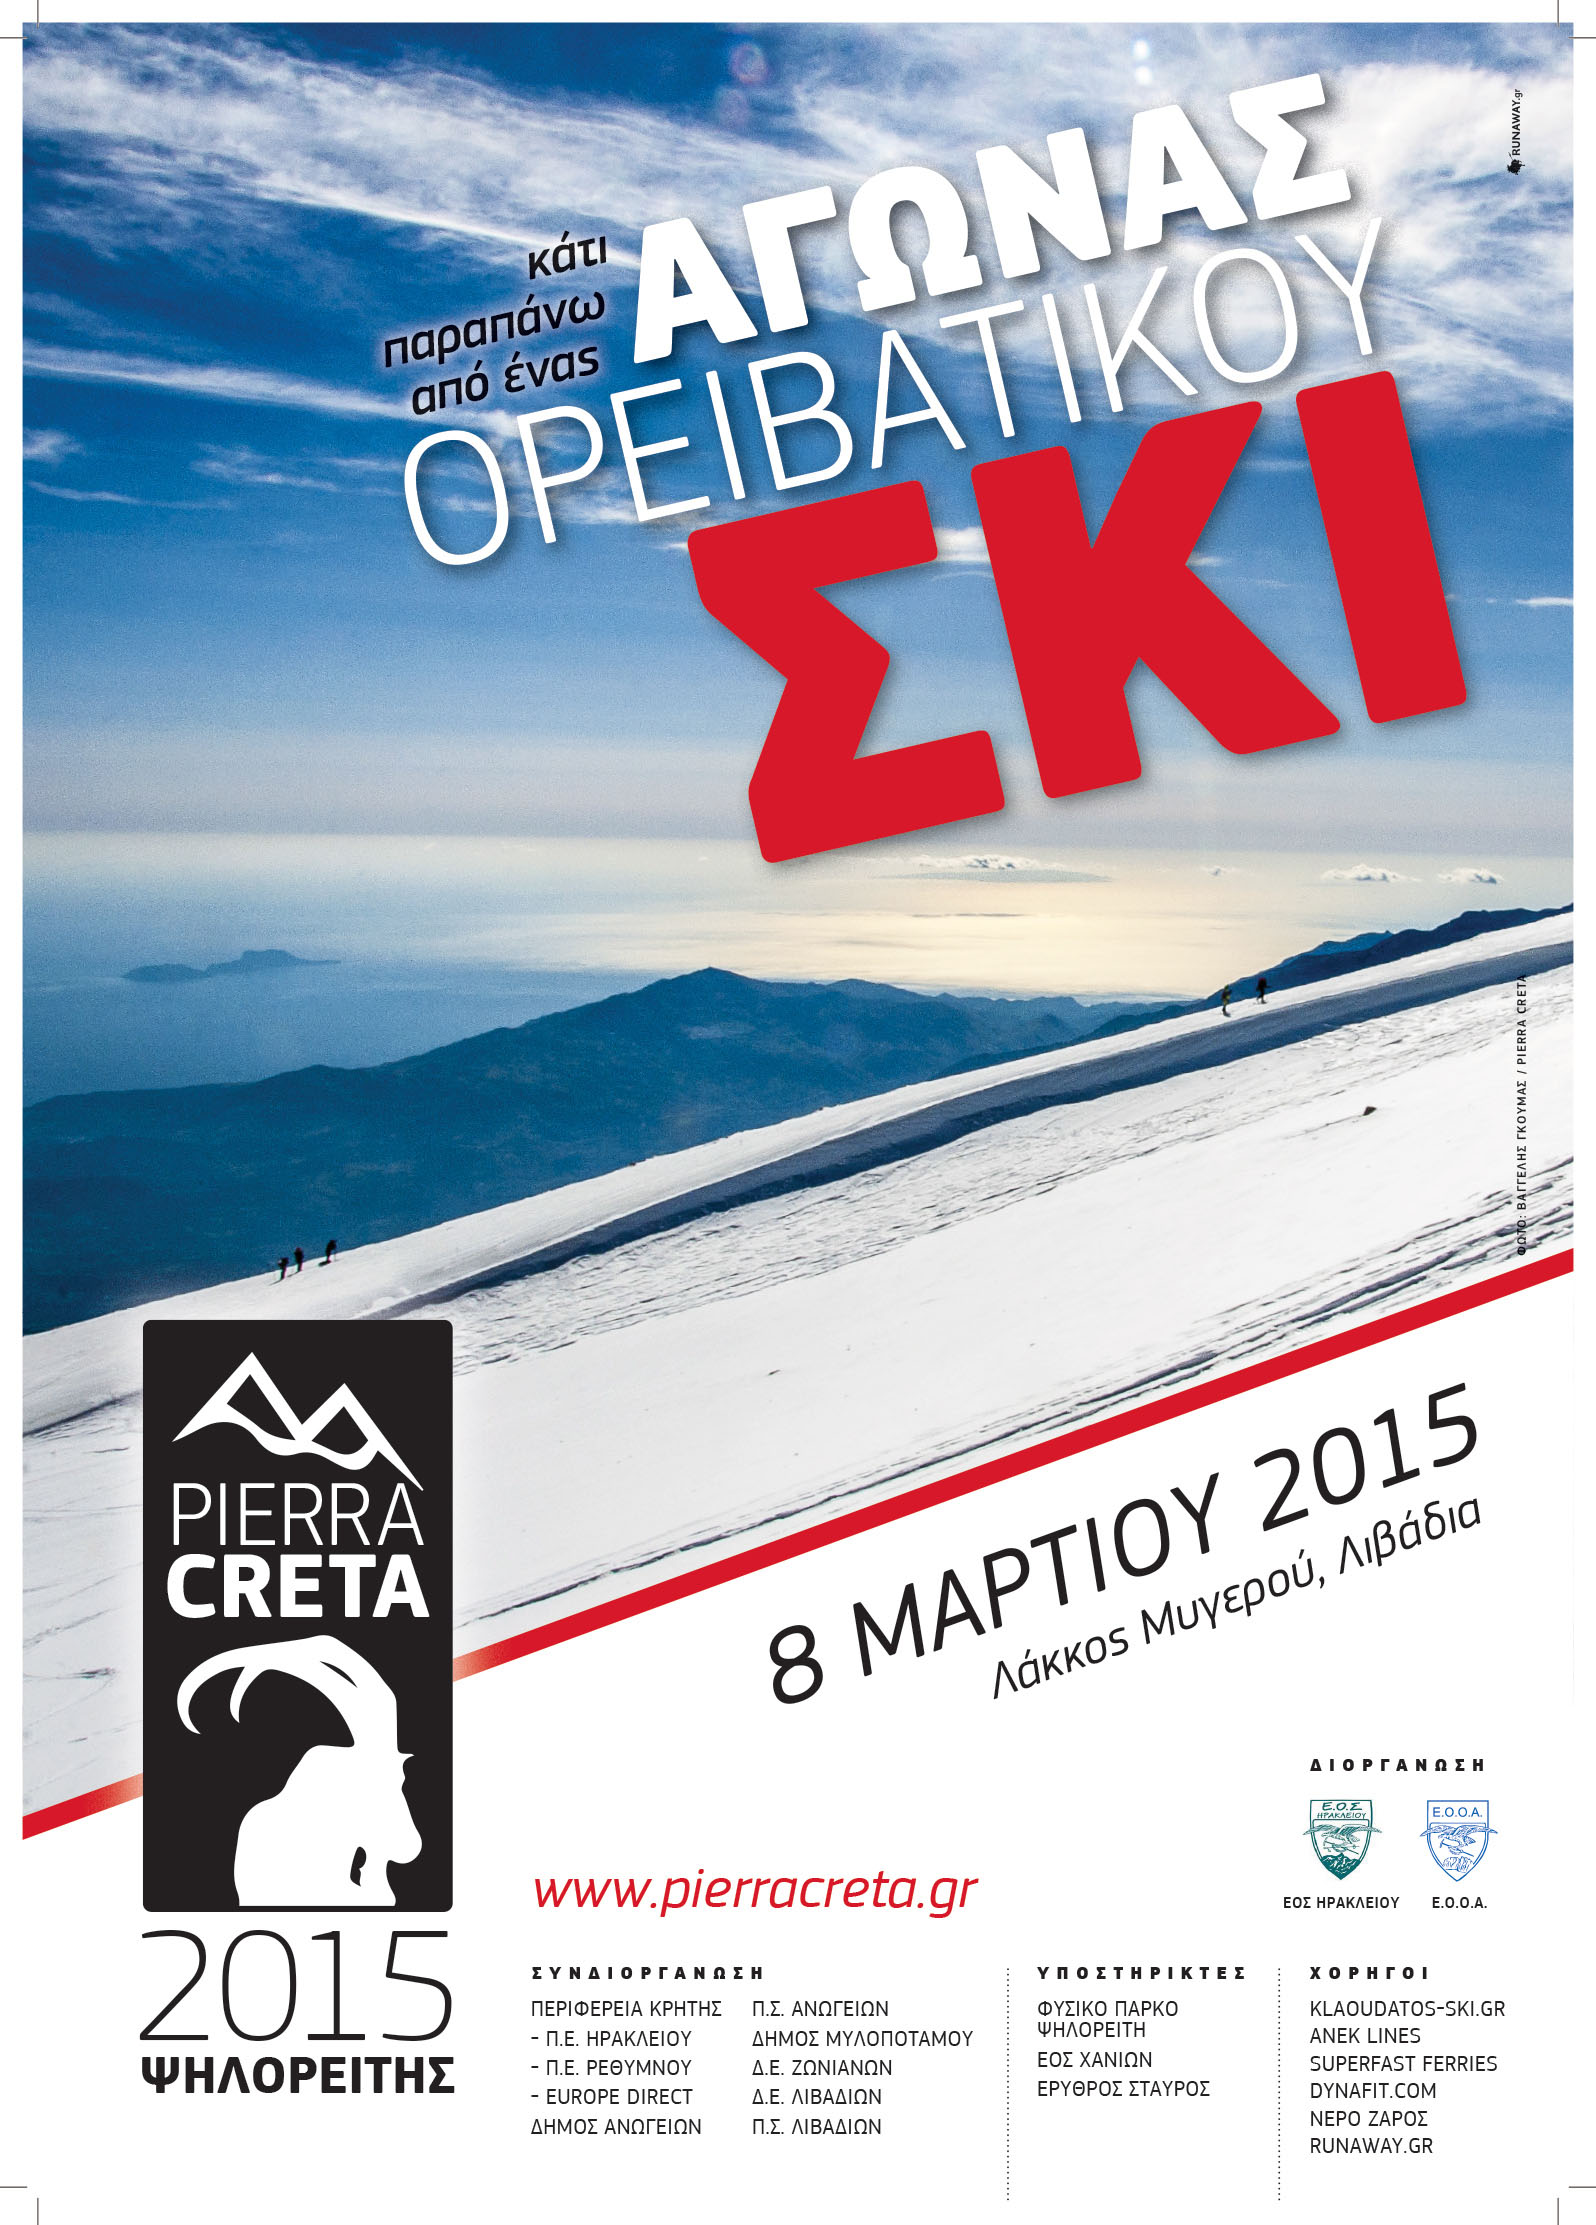 Με την συνδιοργάνωση της ΠΕ Ηρακλείου, ΠΕ Ρεθύμνου και του Europe Direct ο ανοιχτός αγώνας Ορειβατικού Σκι «Pierra Creta»